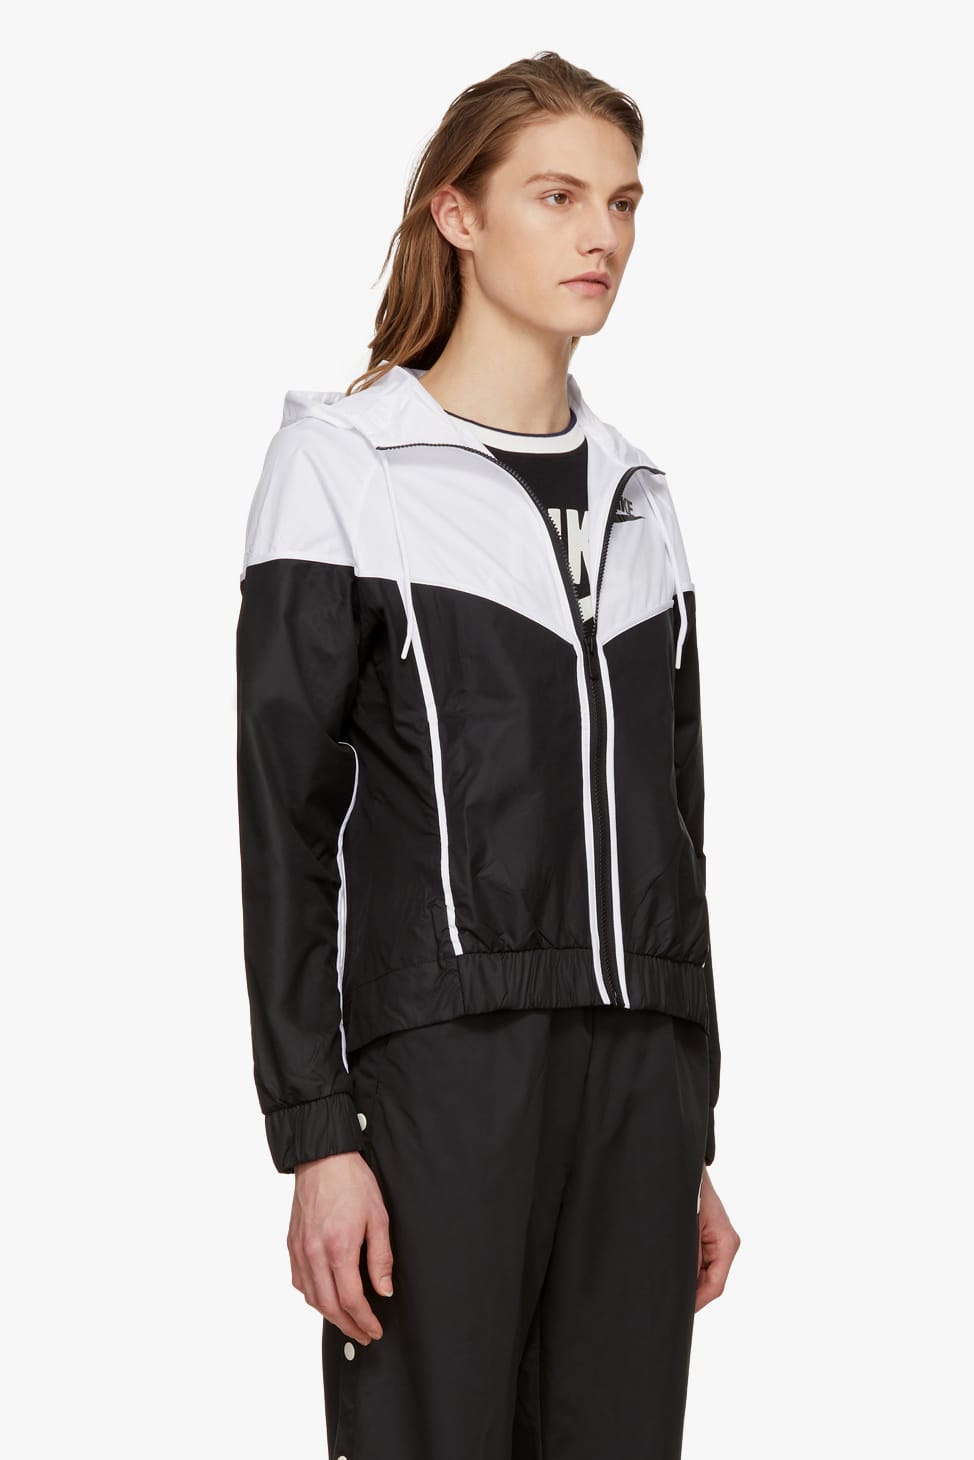 black and white nike track jacket